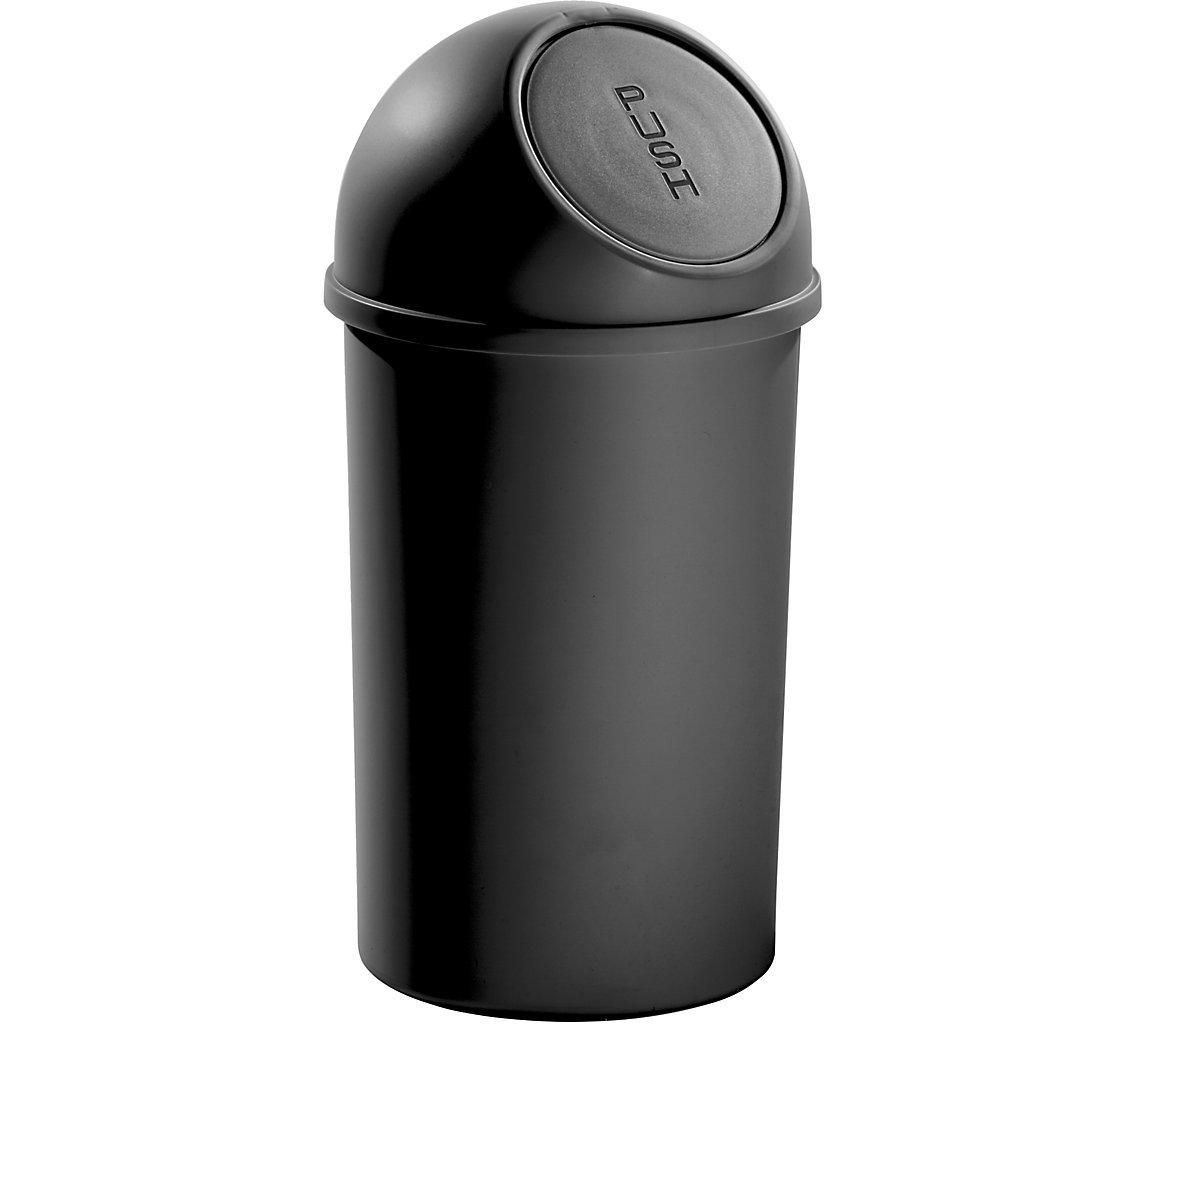 Samozavírací nádoba na odpadky z plastu – helit, objem 25 l, v x Ø 615 x 315 mm, černá, bal.j. 3 ks